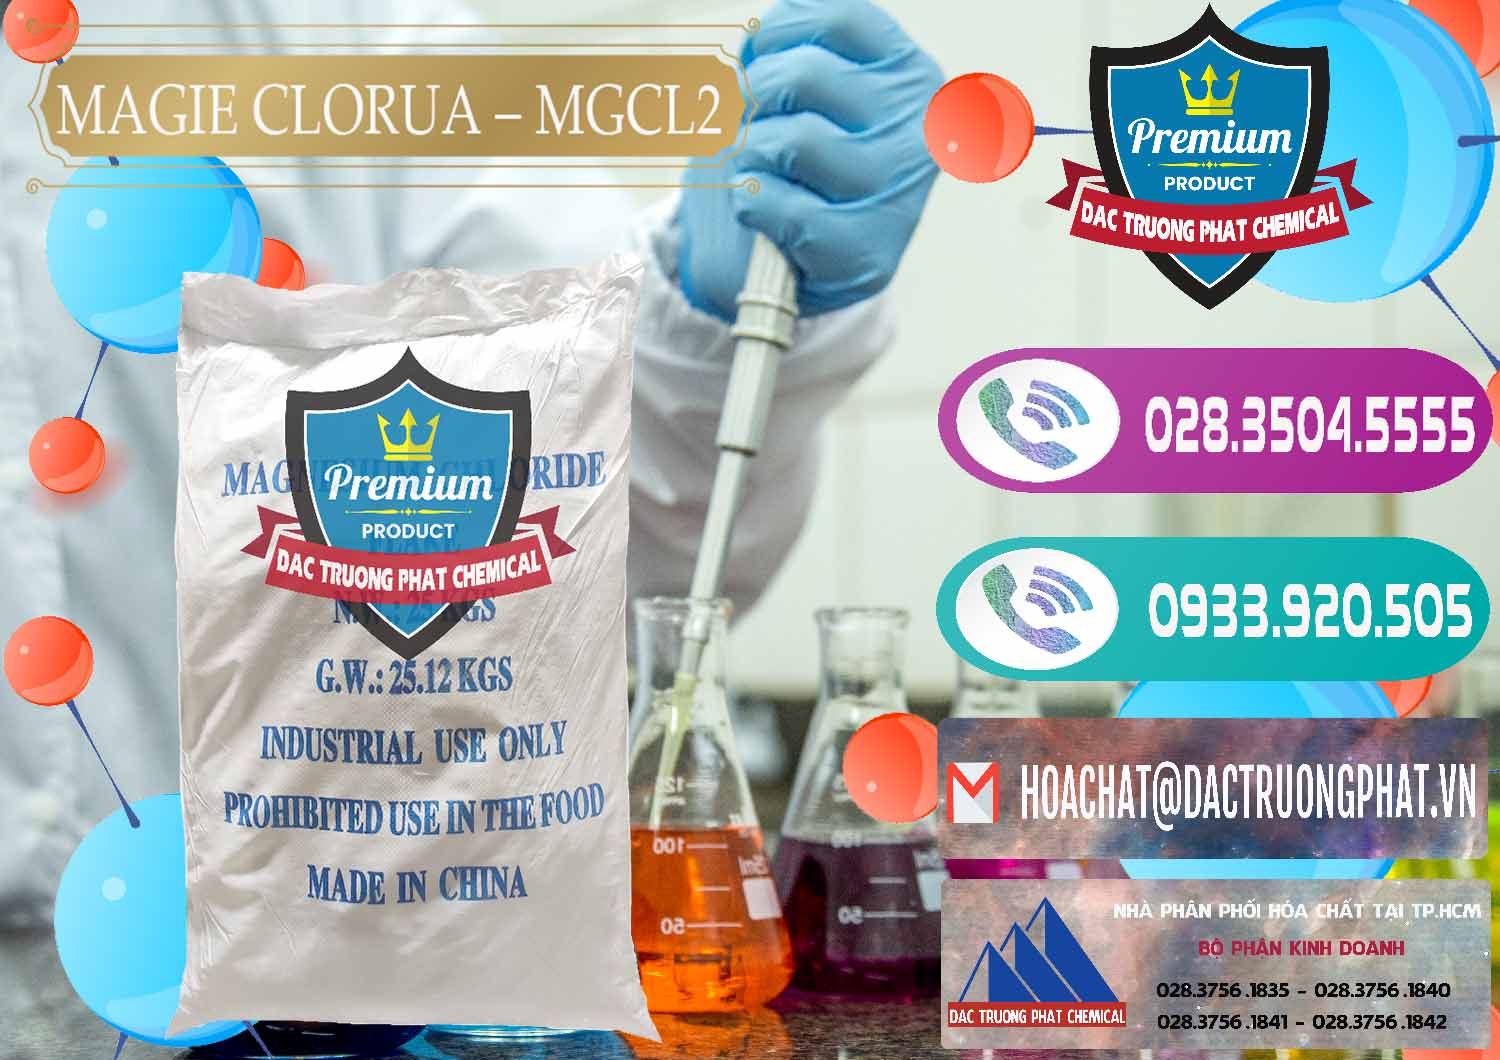 Nơi chuyên cung cấp - bán Magie Clorua – MGCL2 96% Dạng Vảy Trung Quốc China - 0091 - Cty chuyên phân phối _ bán hóa chất tại TP.HCM - hoachatxulynuoc.com